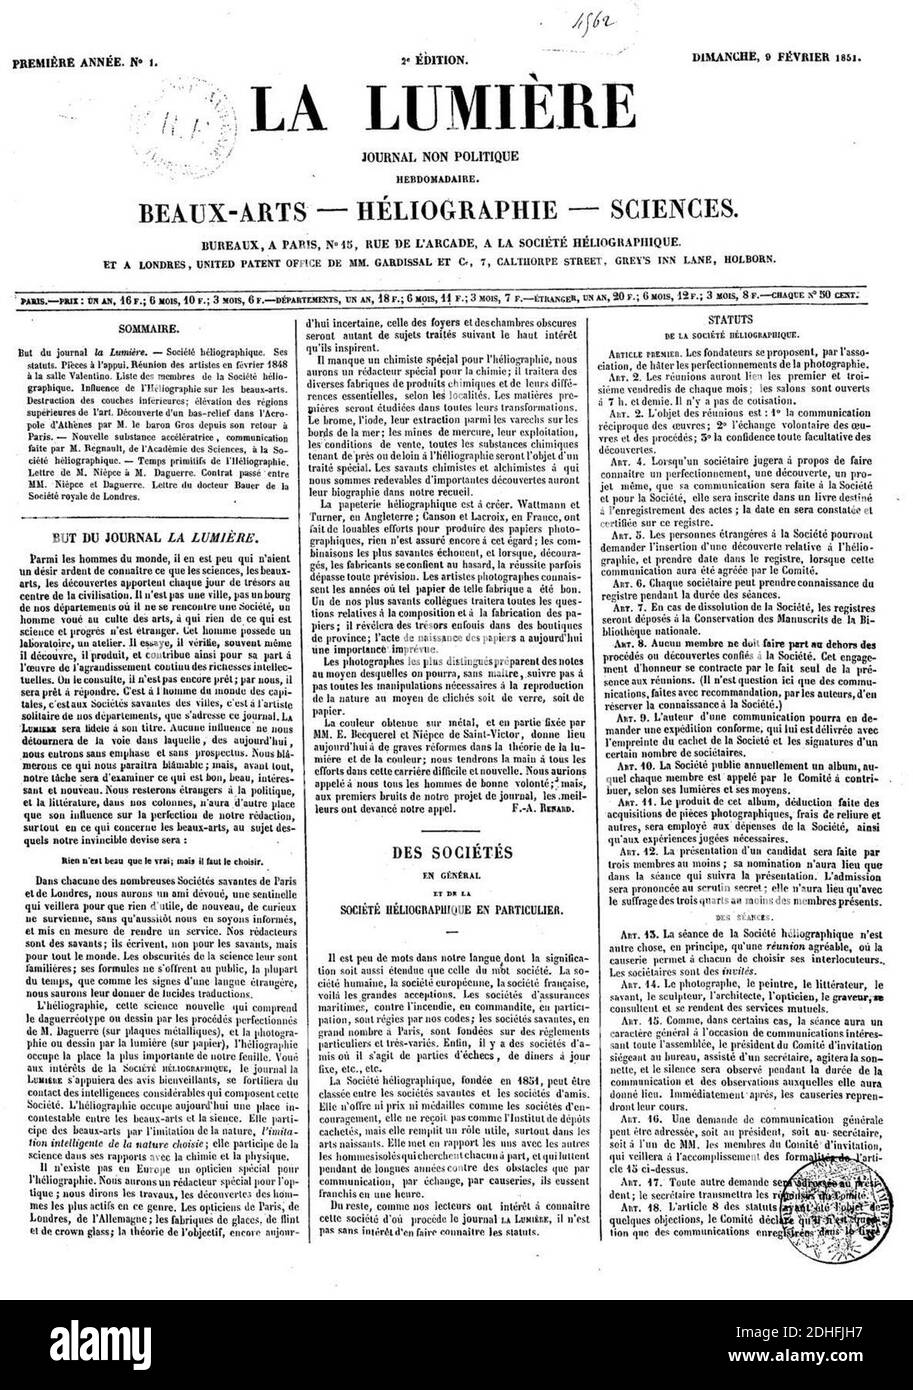 La Lumière 9 février 1851. Stock Photo